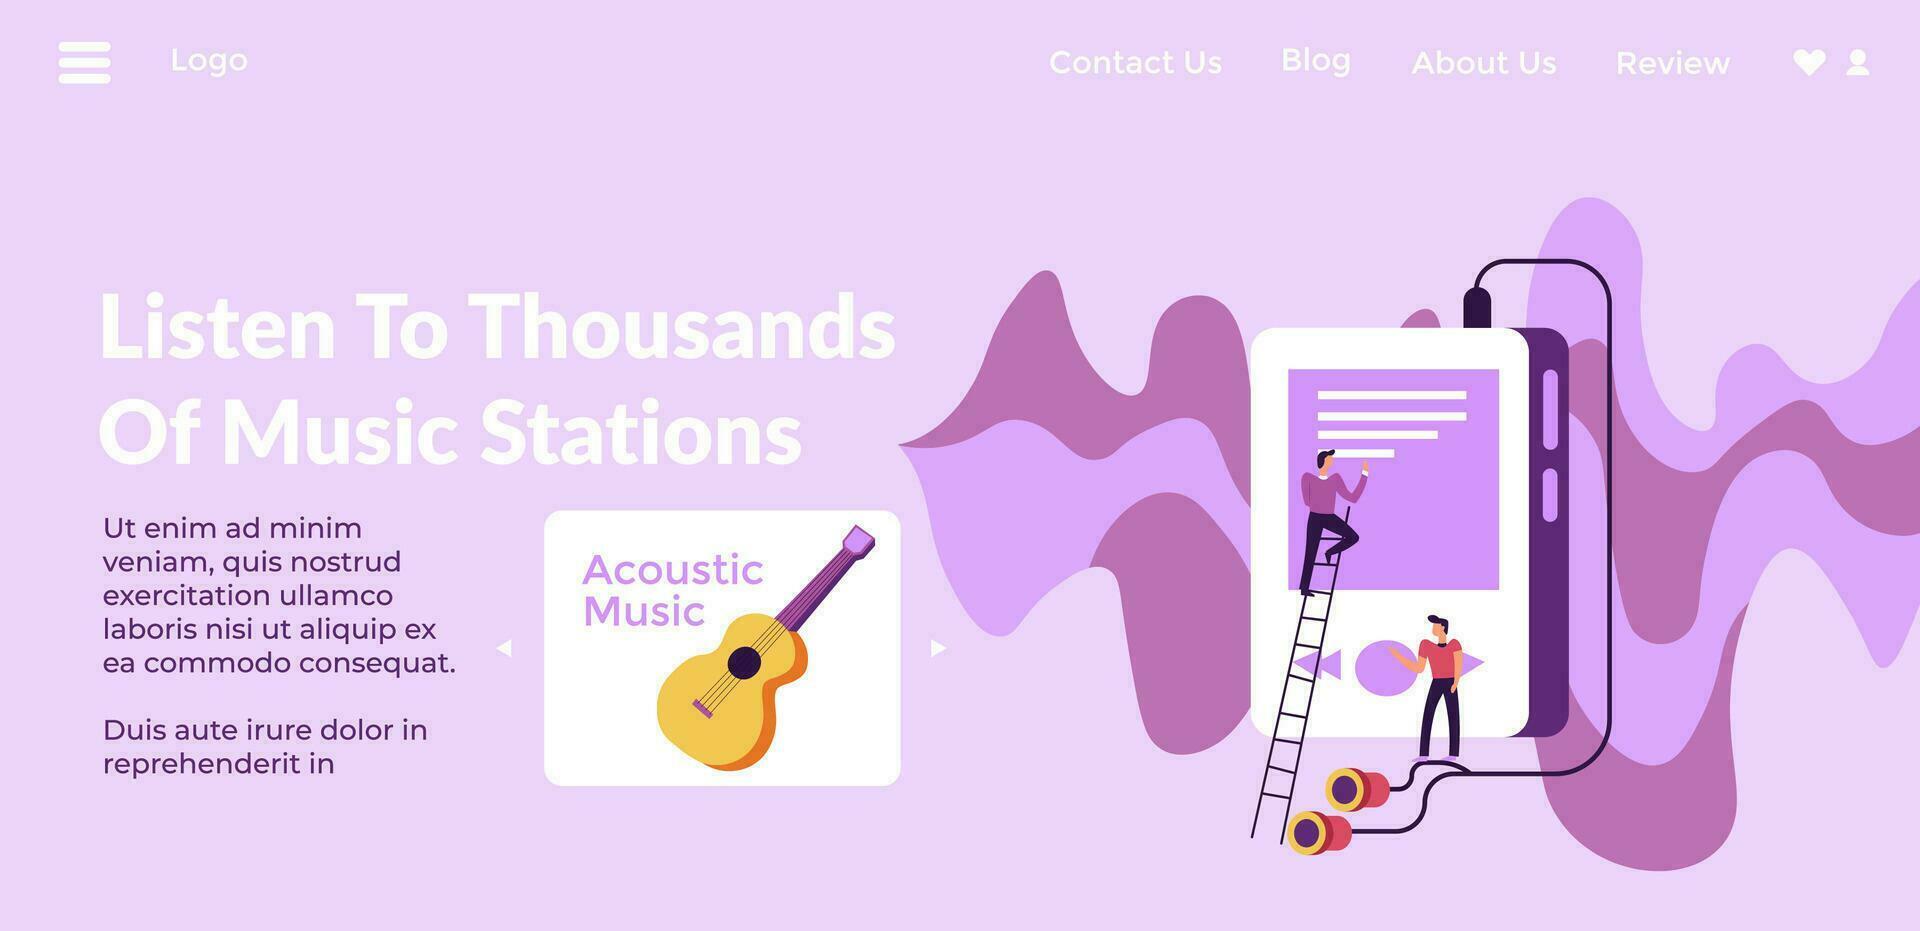 luister naar duizenden van muziek- stations website vector